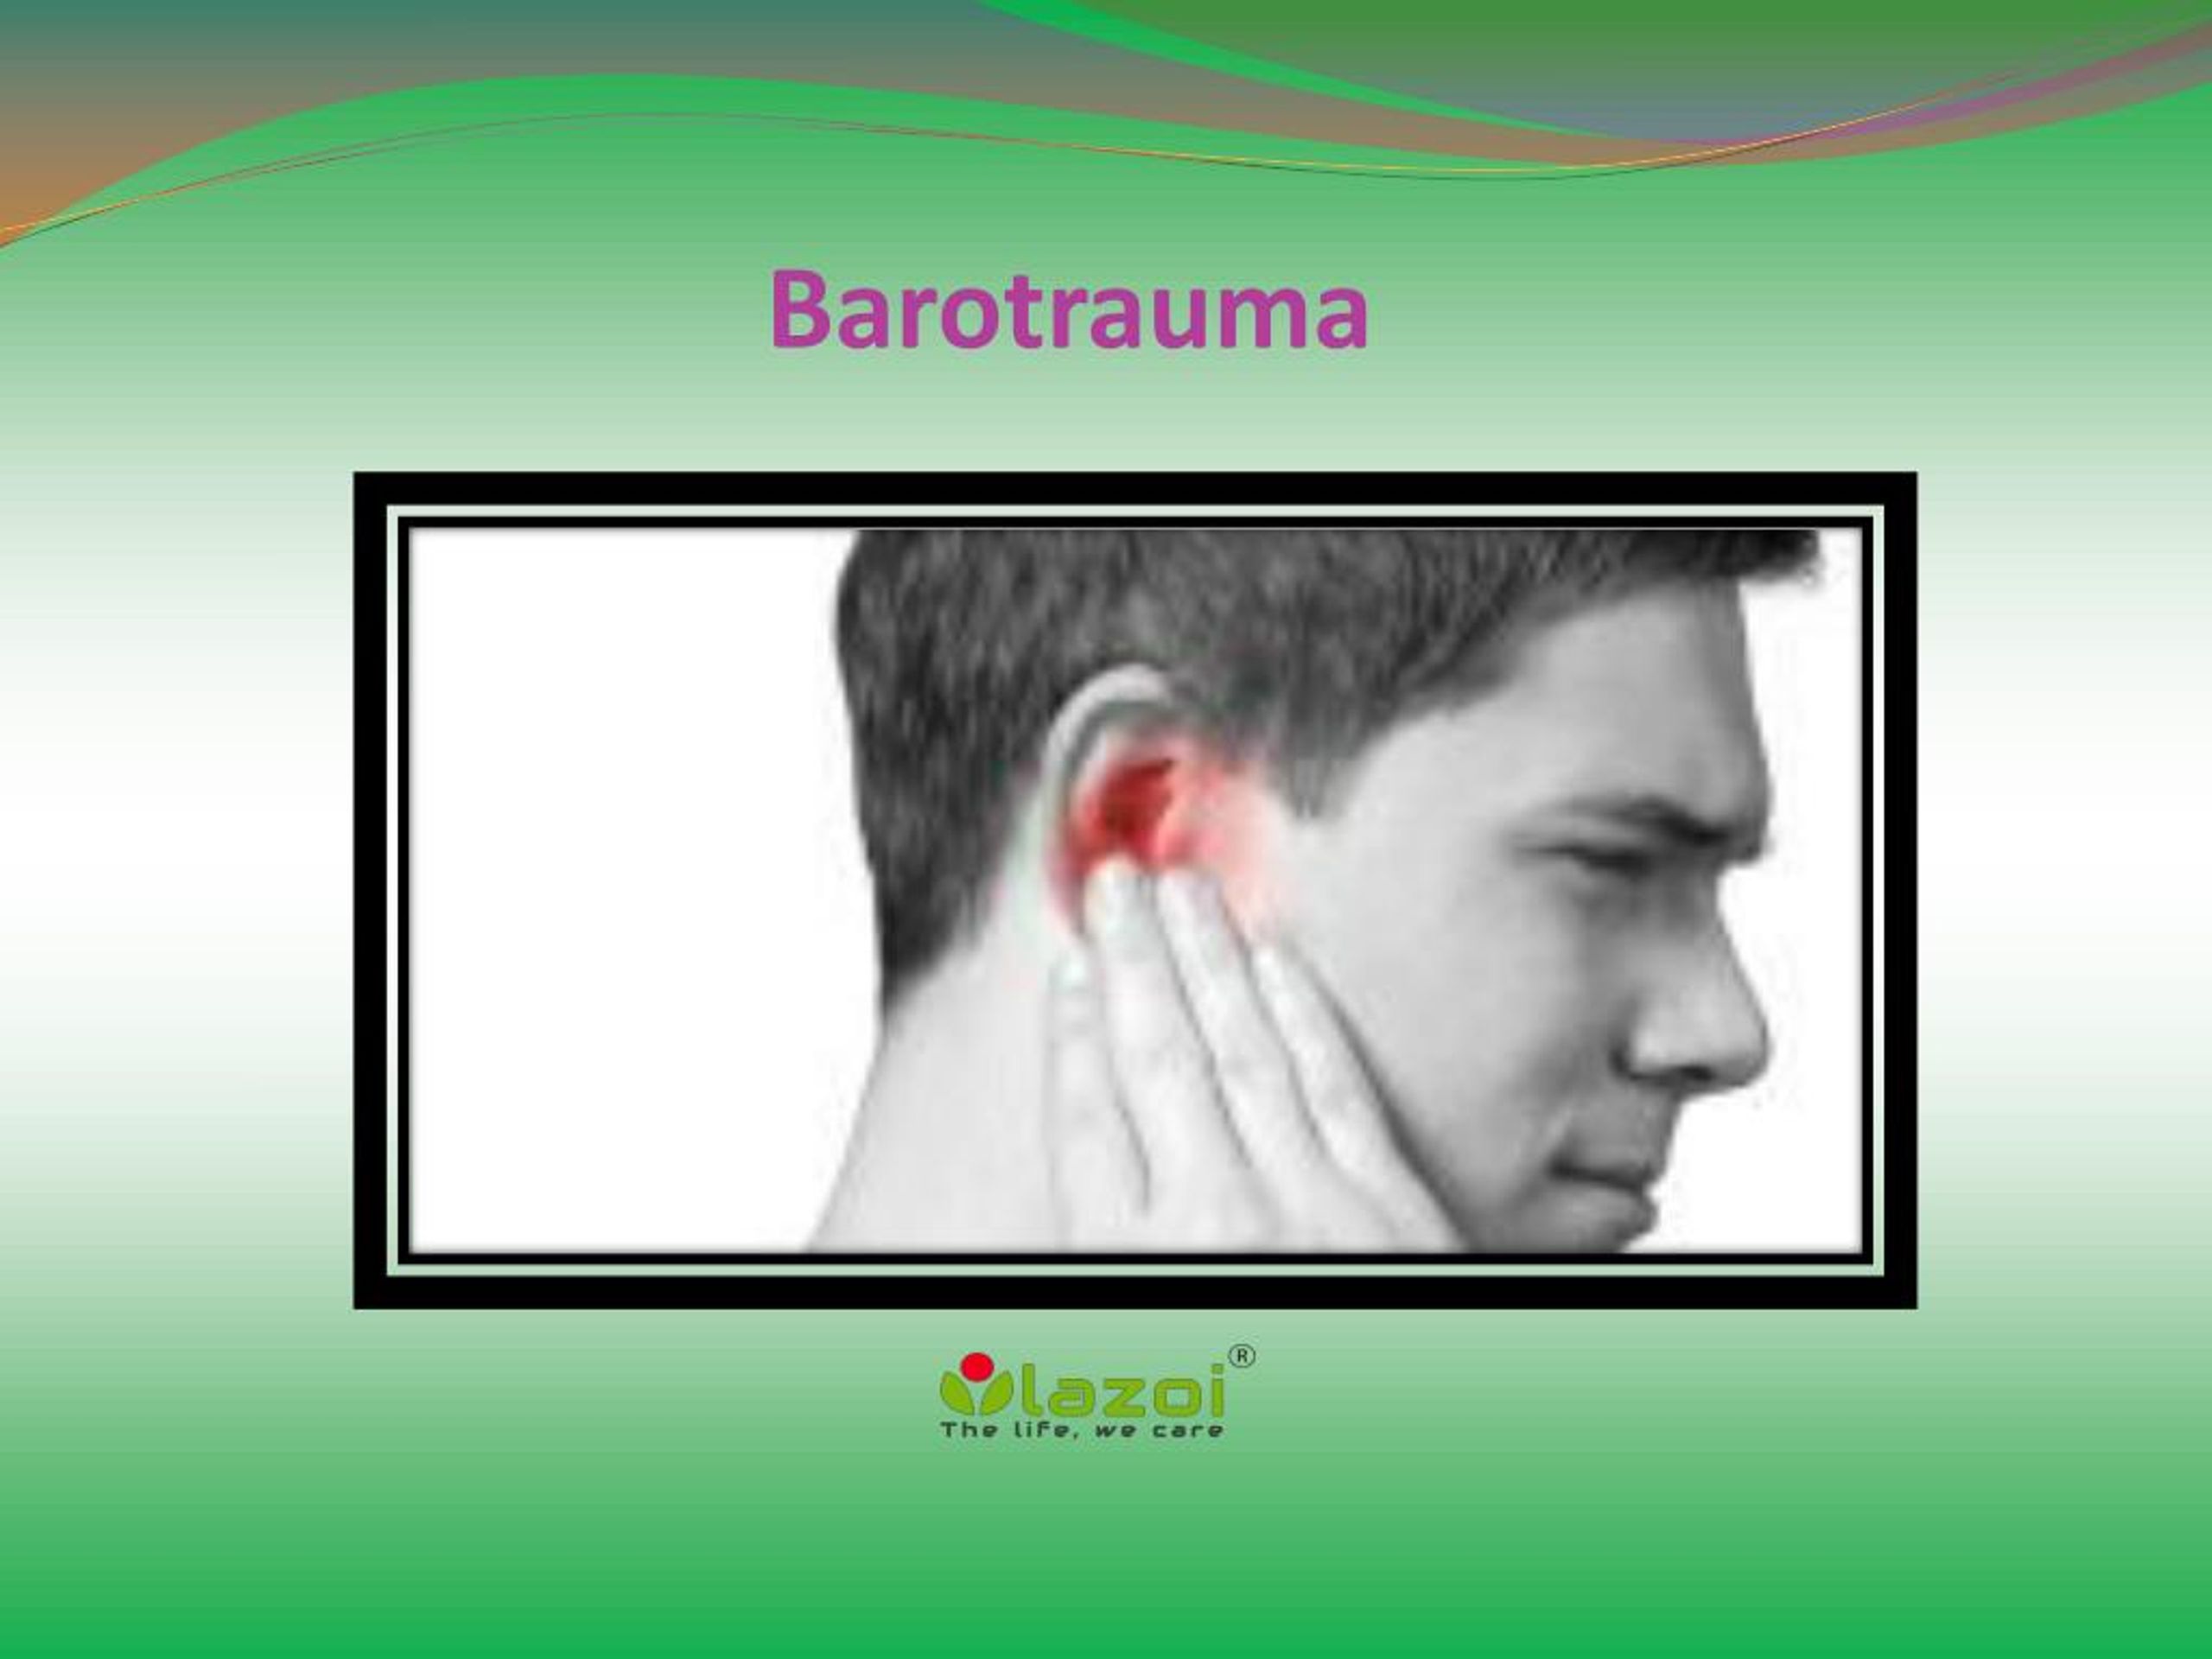 barotrauma definition